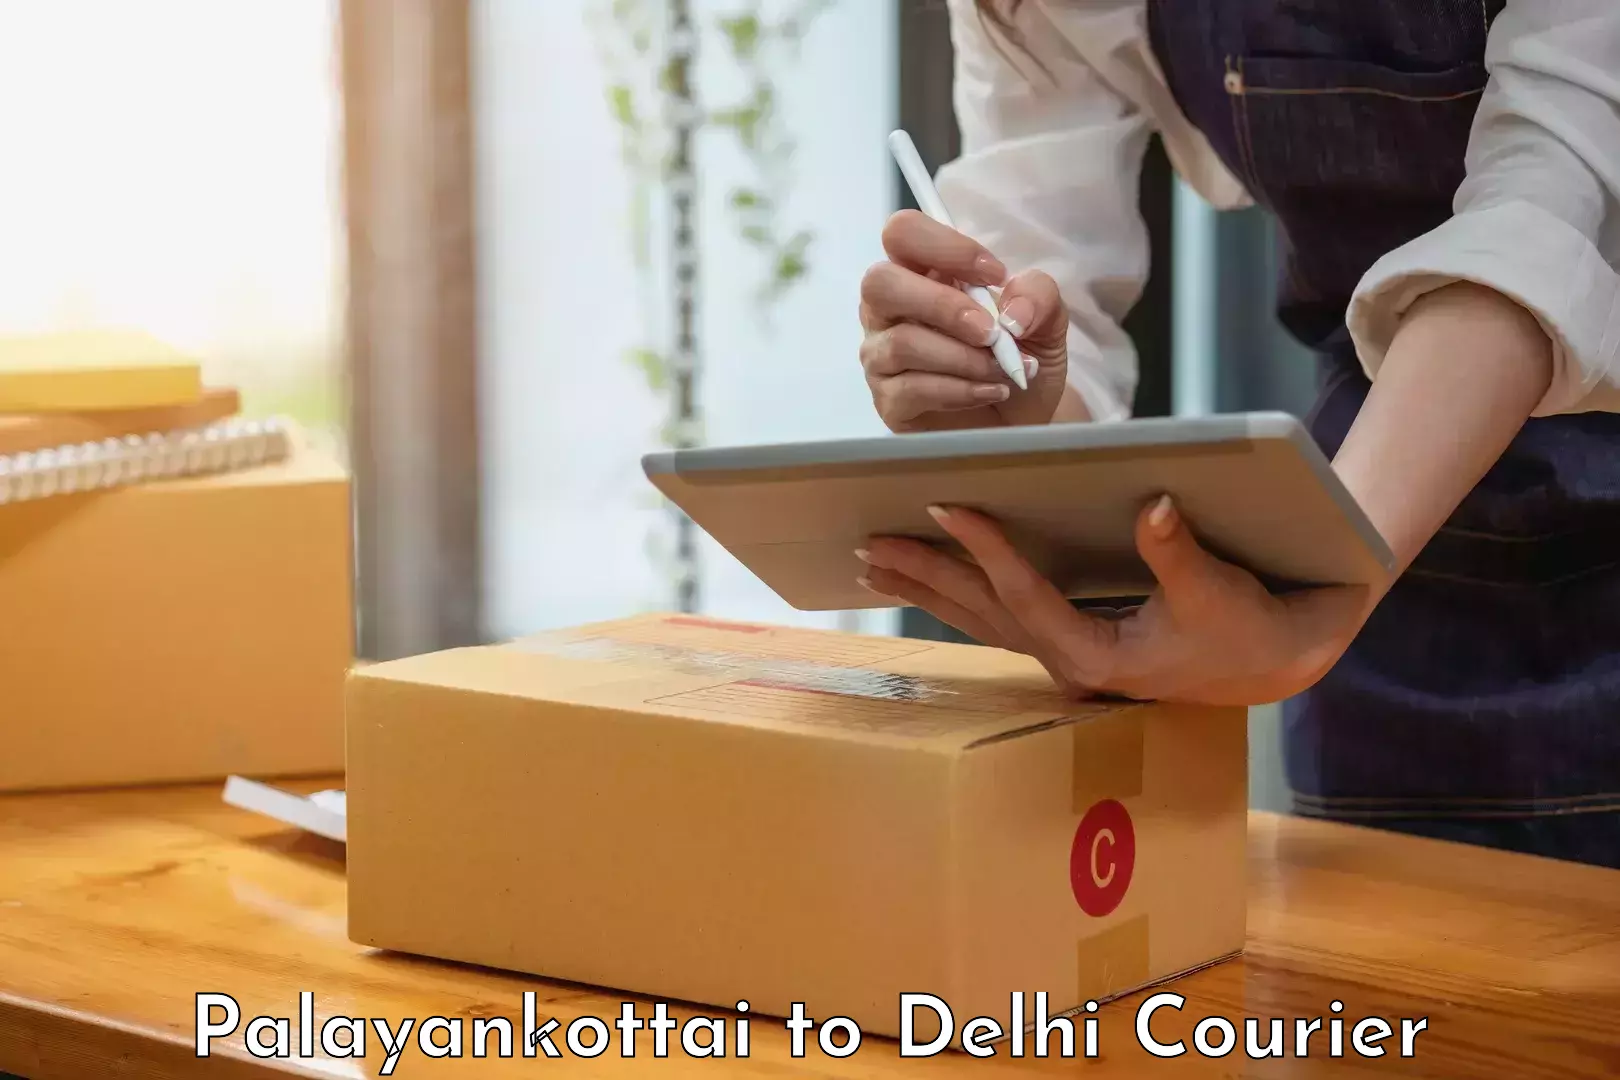 Professional parcel services Palayankottai to Jamia Millia Islamia New Delhi